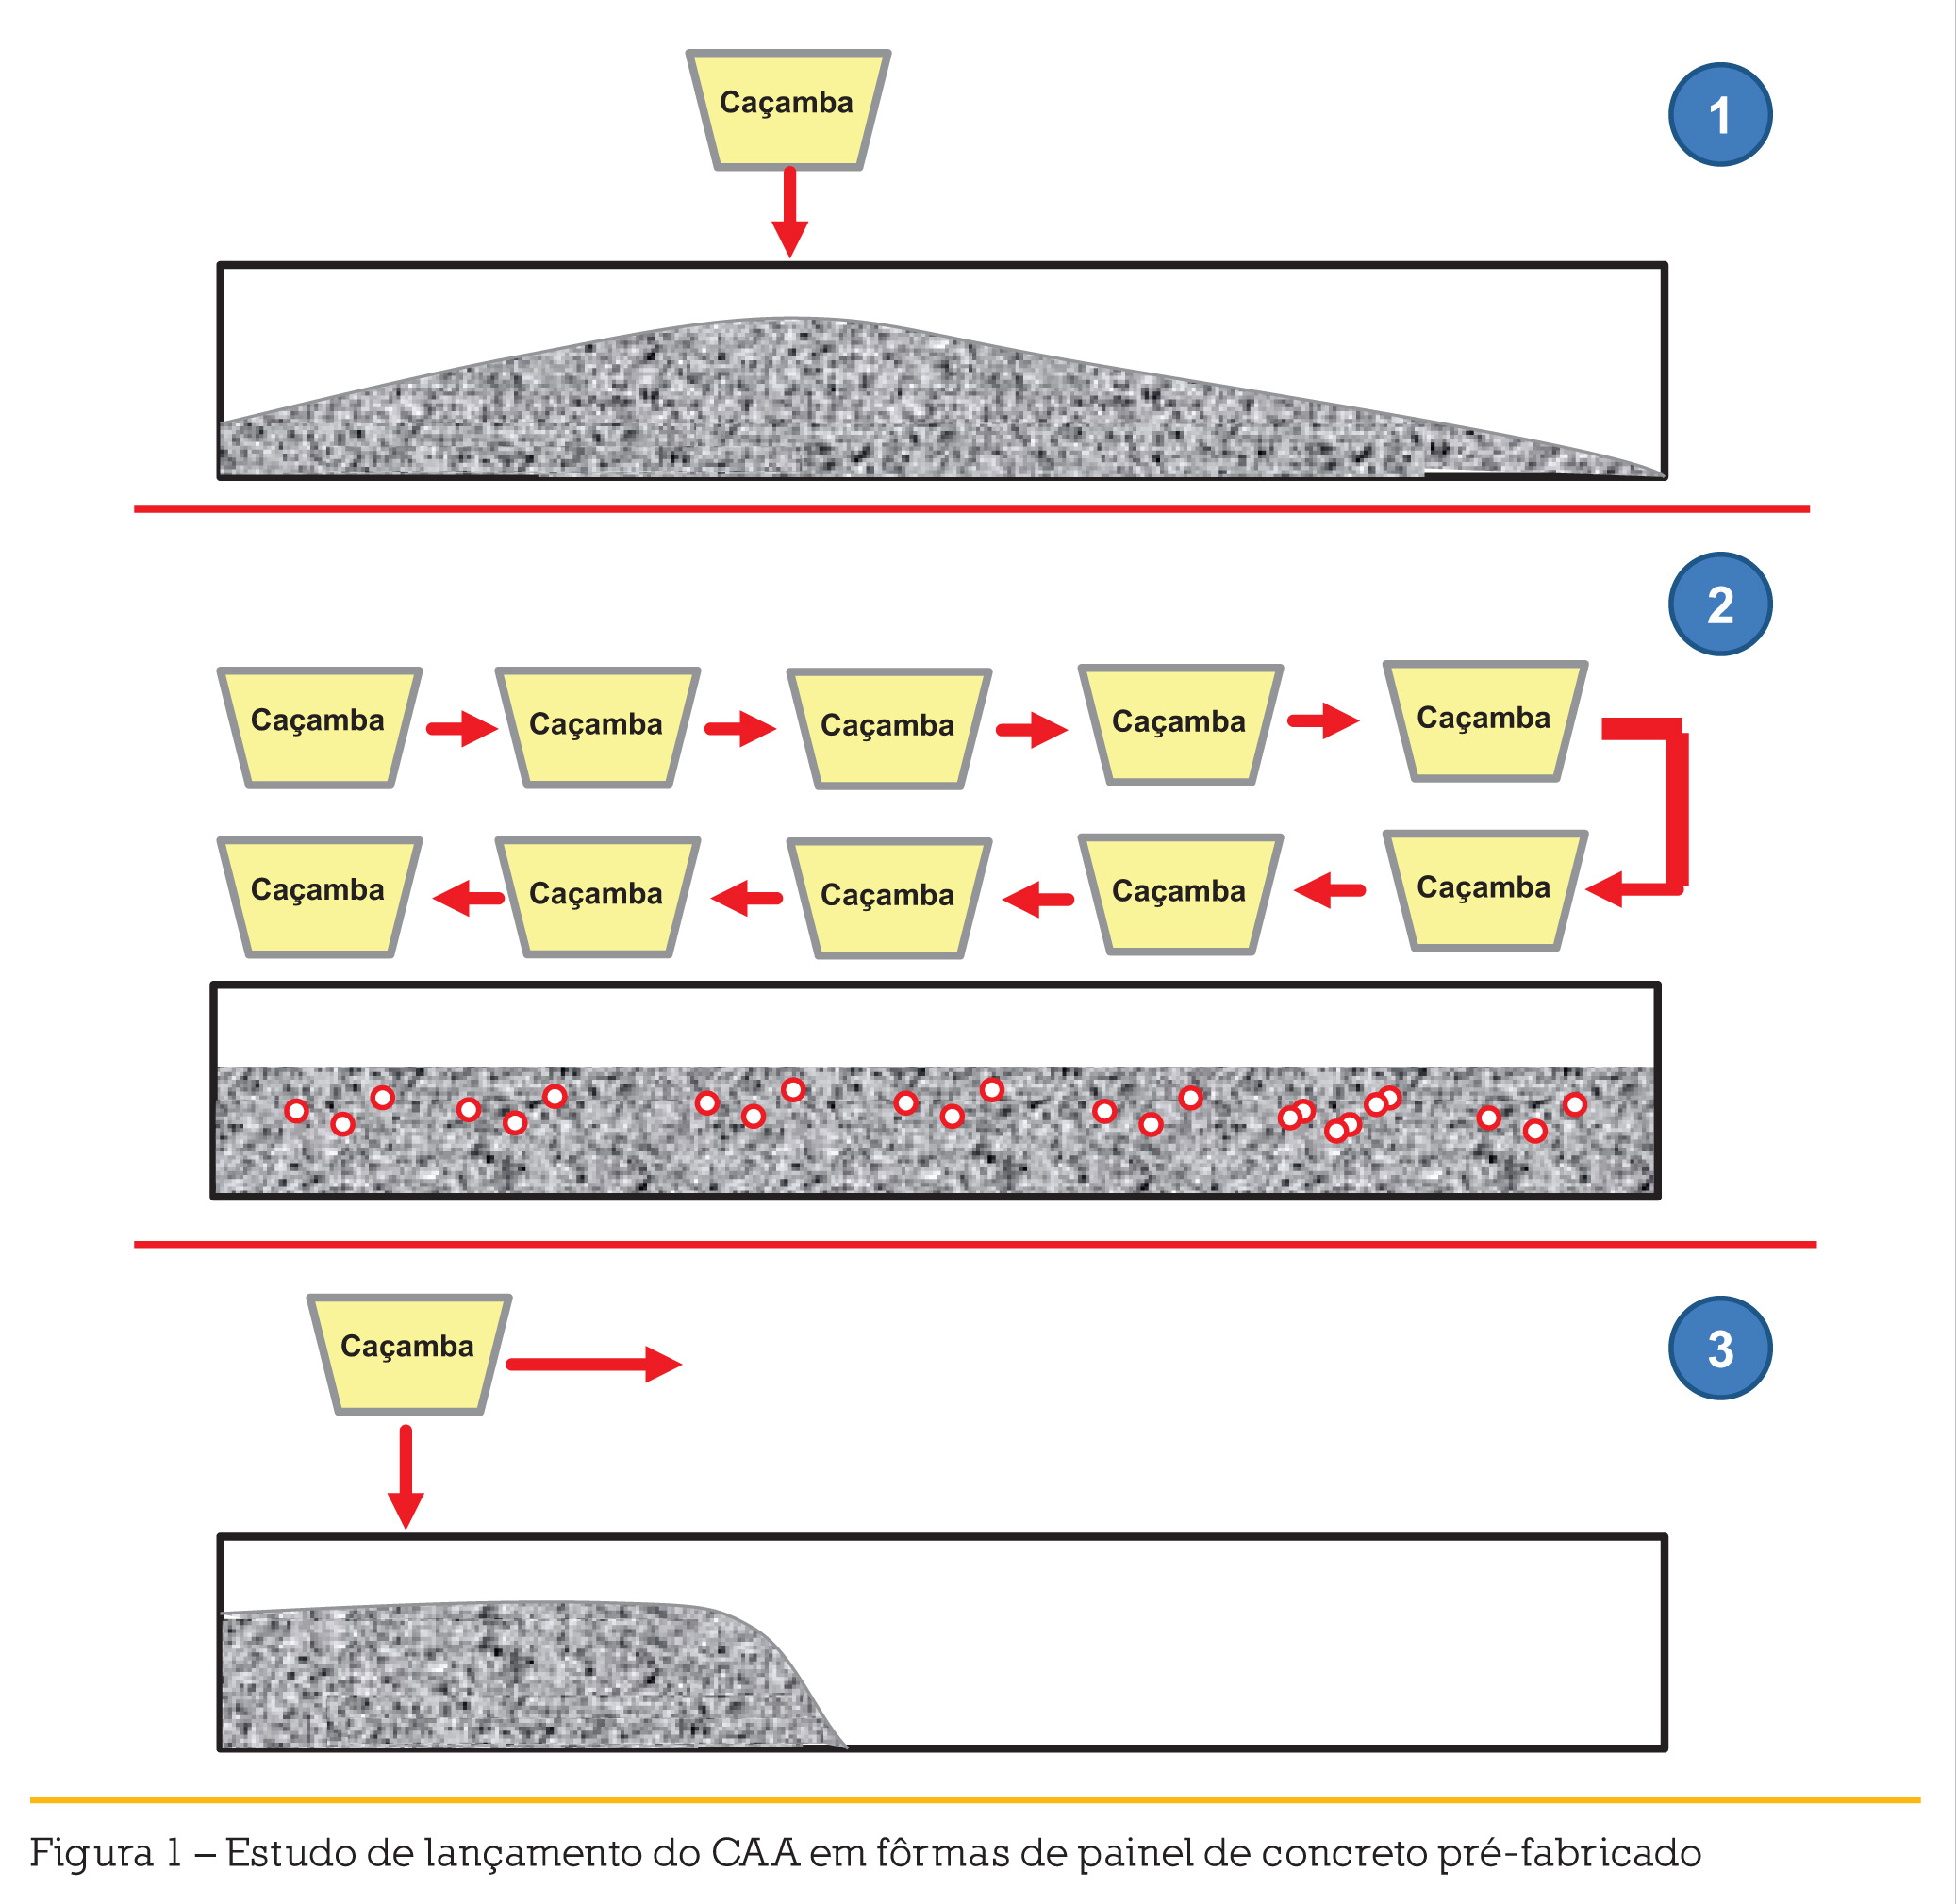 Figura 1 – Estudo de lançamento do CAA em fôrmas de painel de concreto pré-fabricado